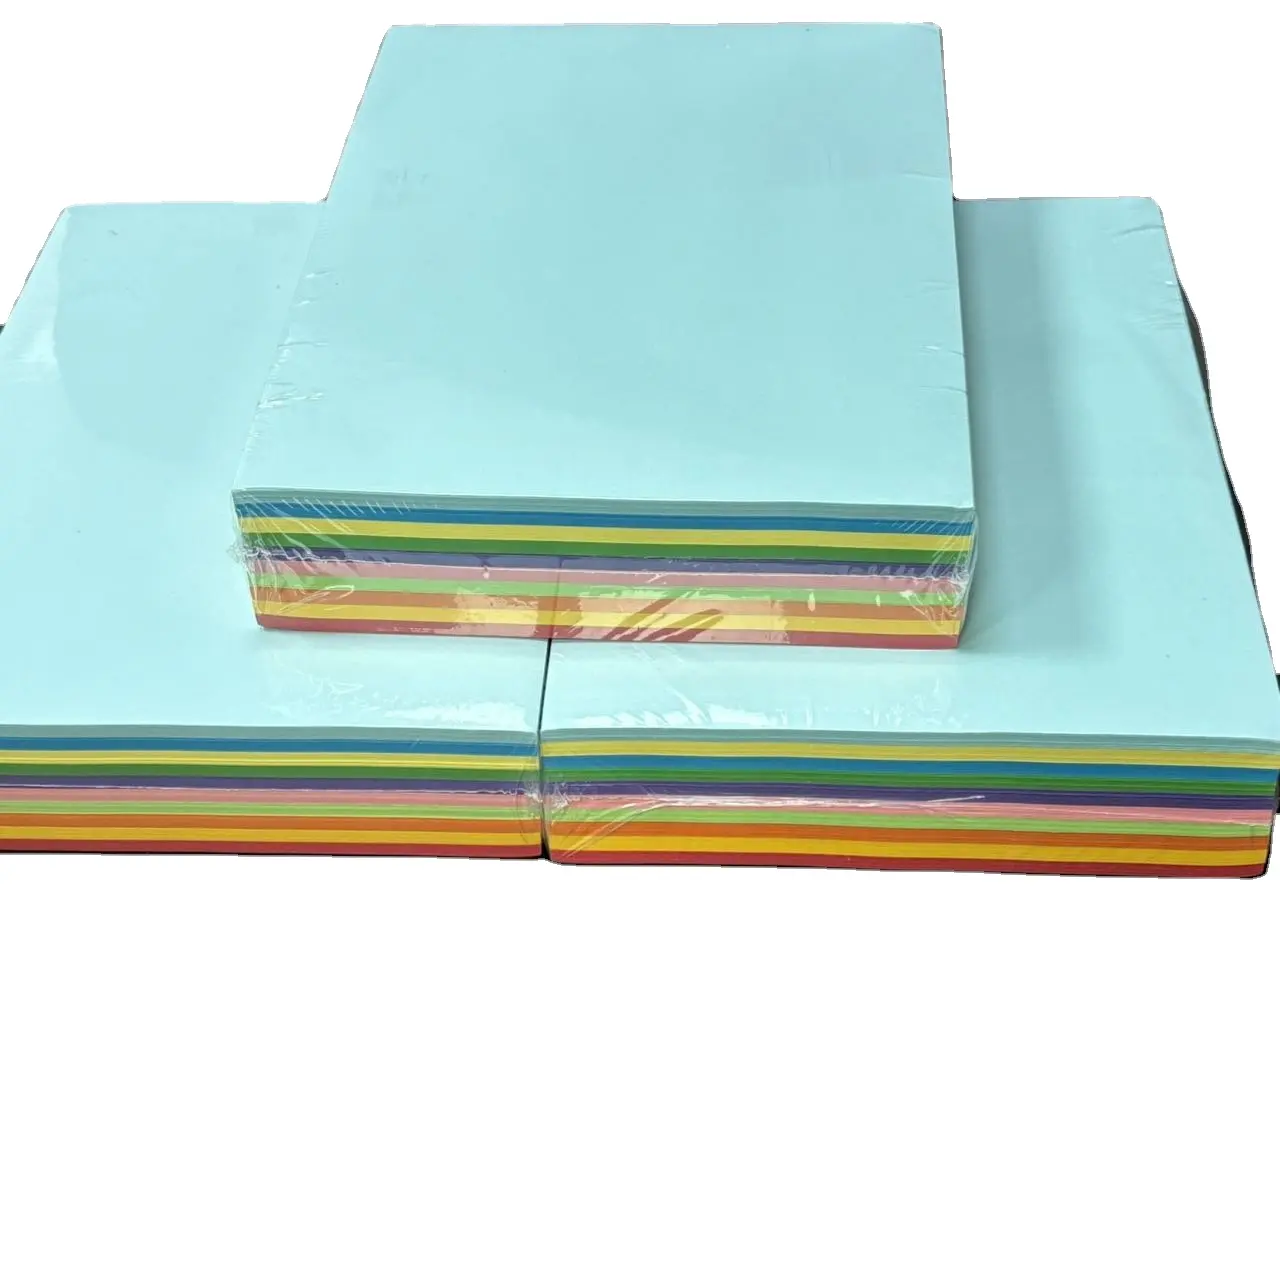 Papel bond colorido a4 para papelão, cópia impressa em papel duro, papel de impressão offset sem madeira 80 g/m2 para escritório, material de escritório